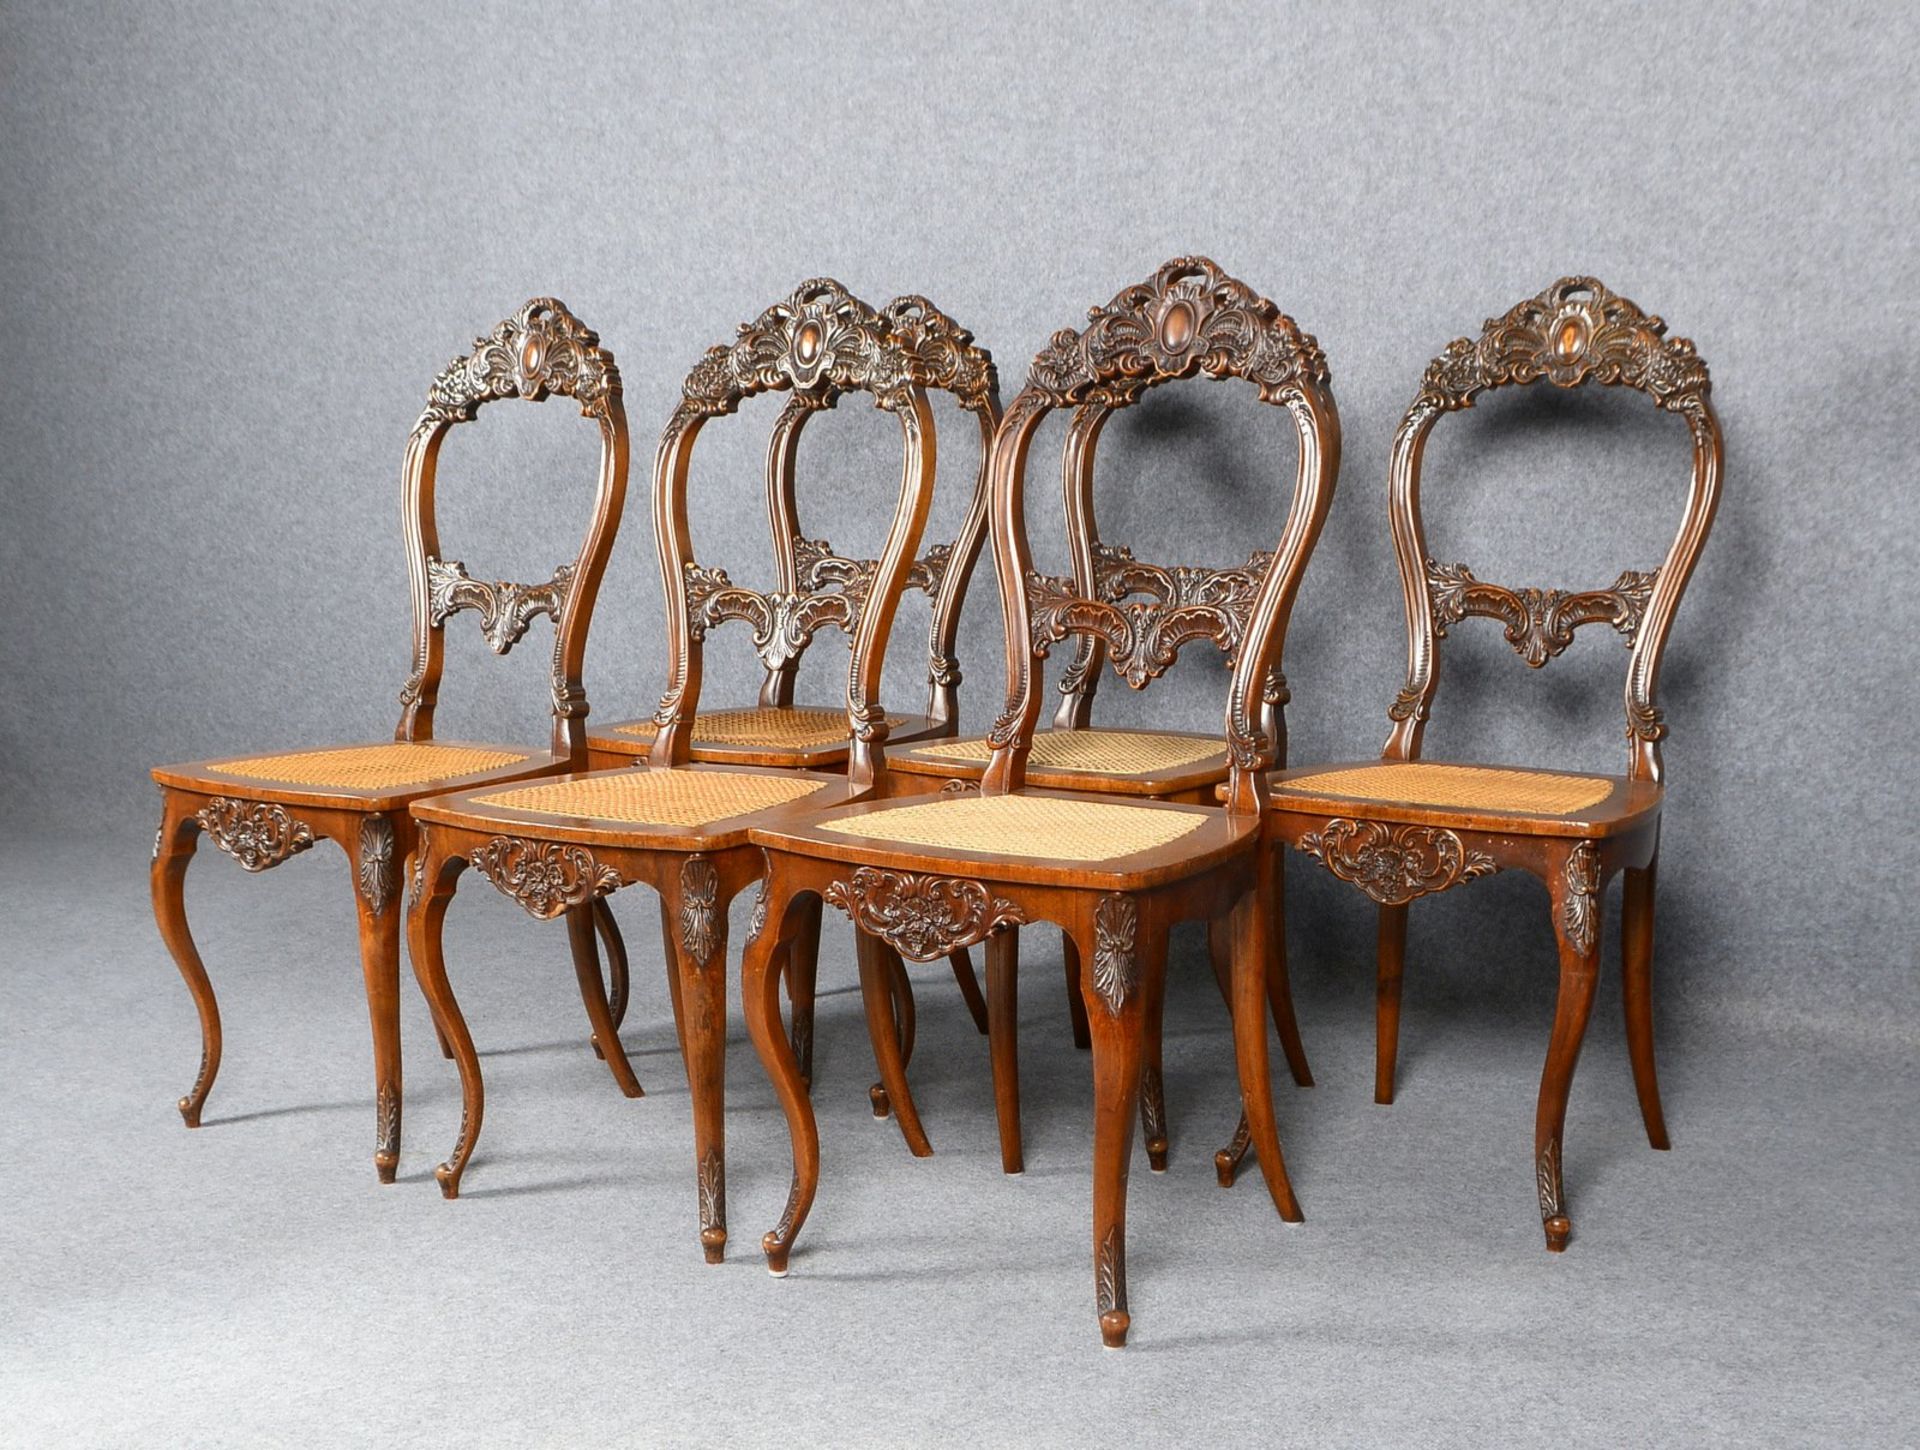 6 Stühle, Mahagoni, Holz mit reichem Schnitzwerk, mit Rattangeflecht - Bild 3 aus 3